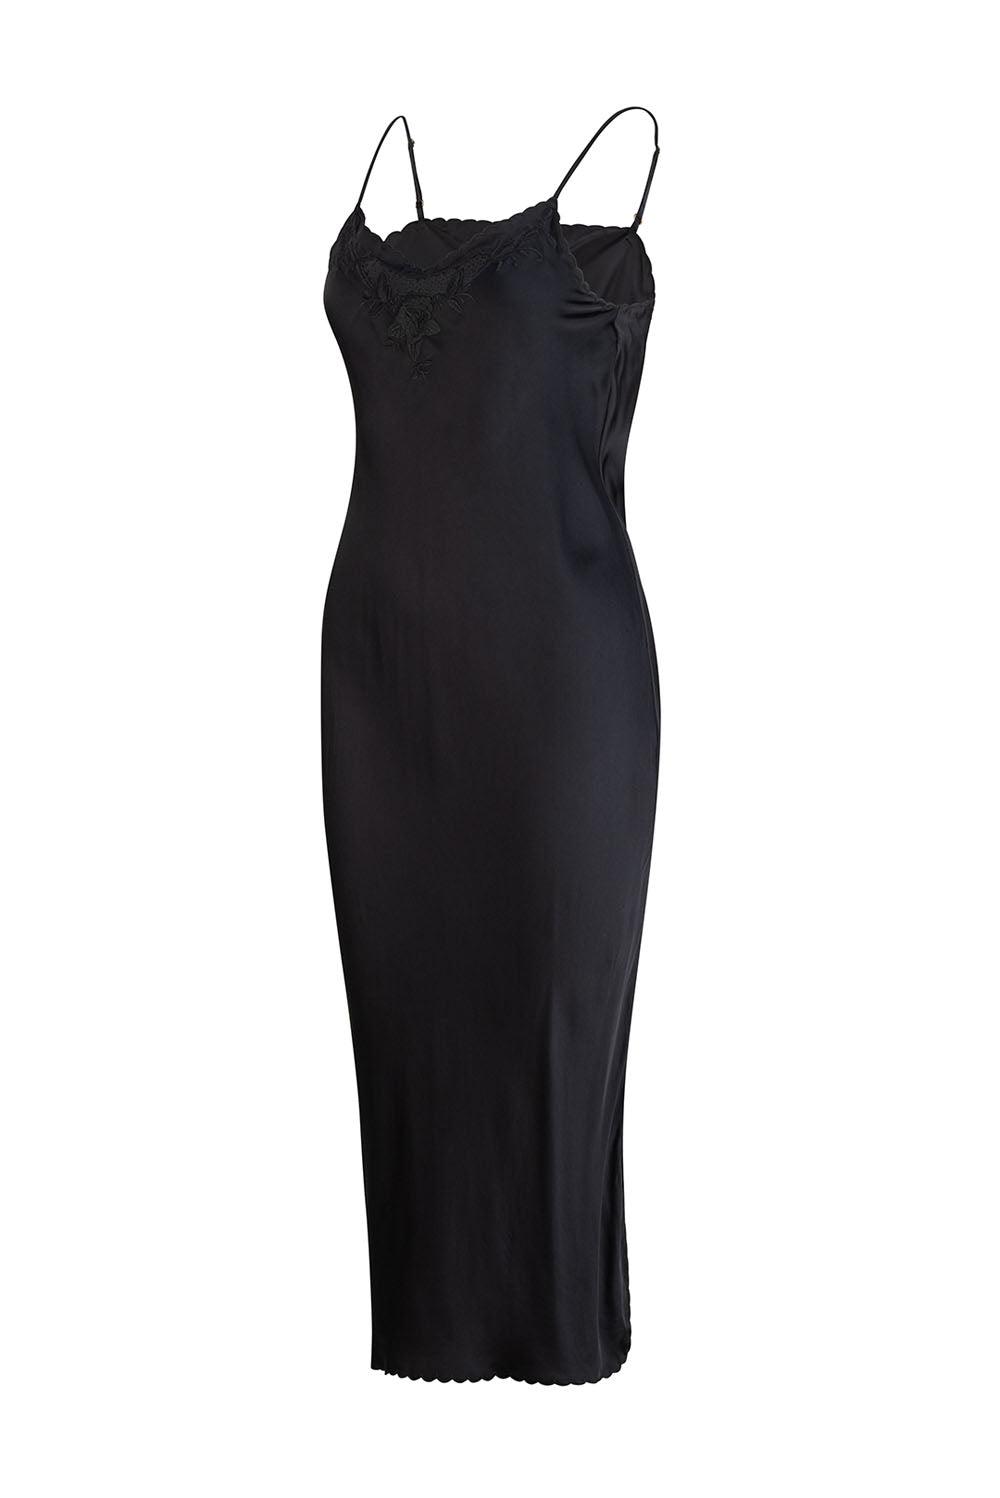 Santa Teresa Estella Midi Dress - Black